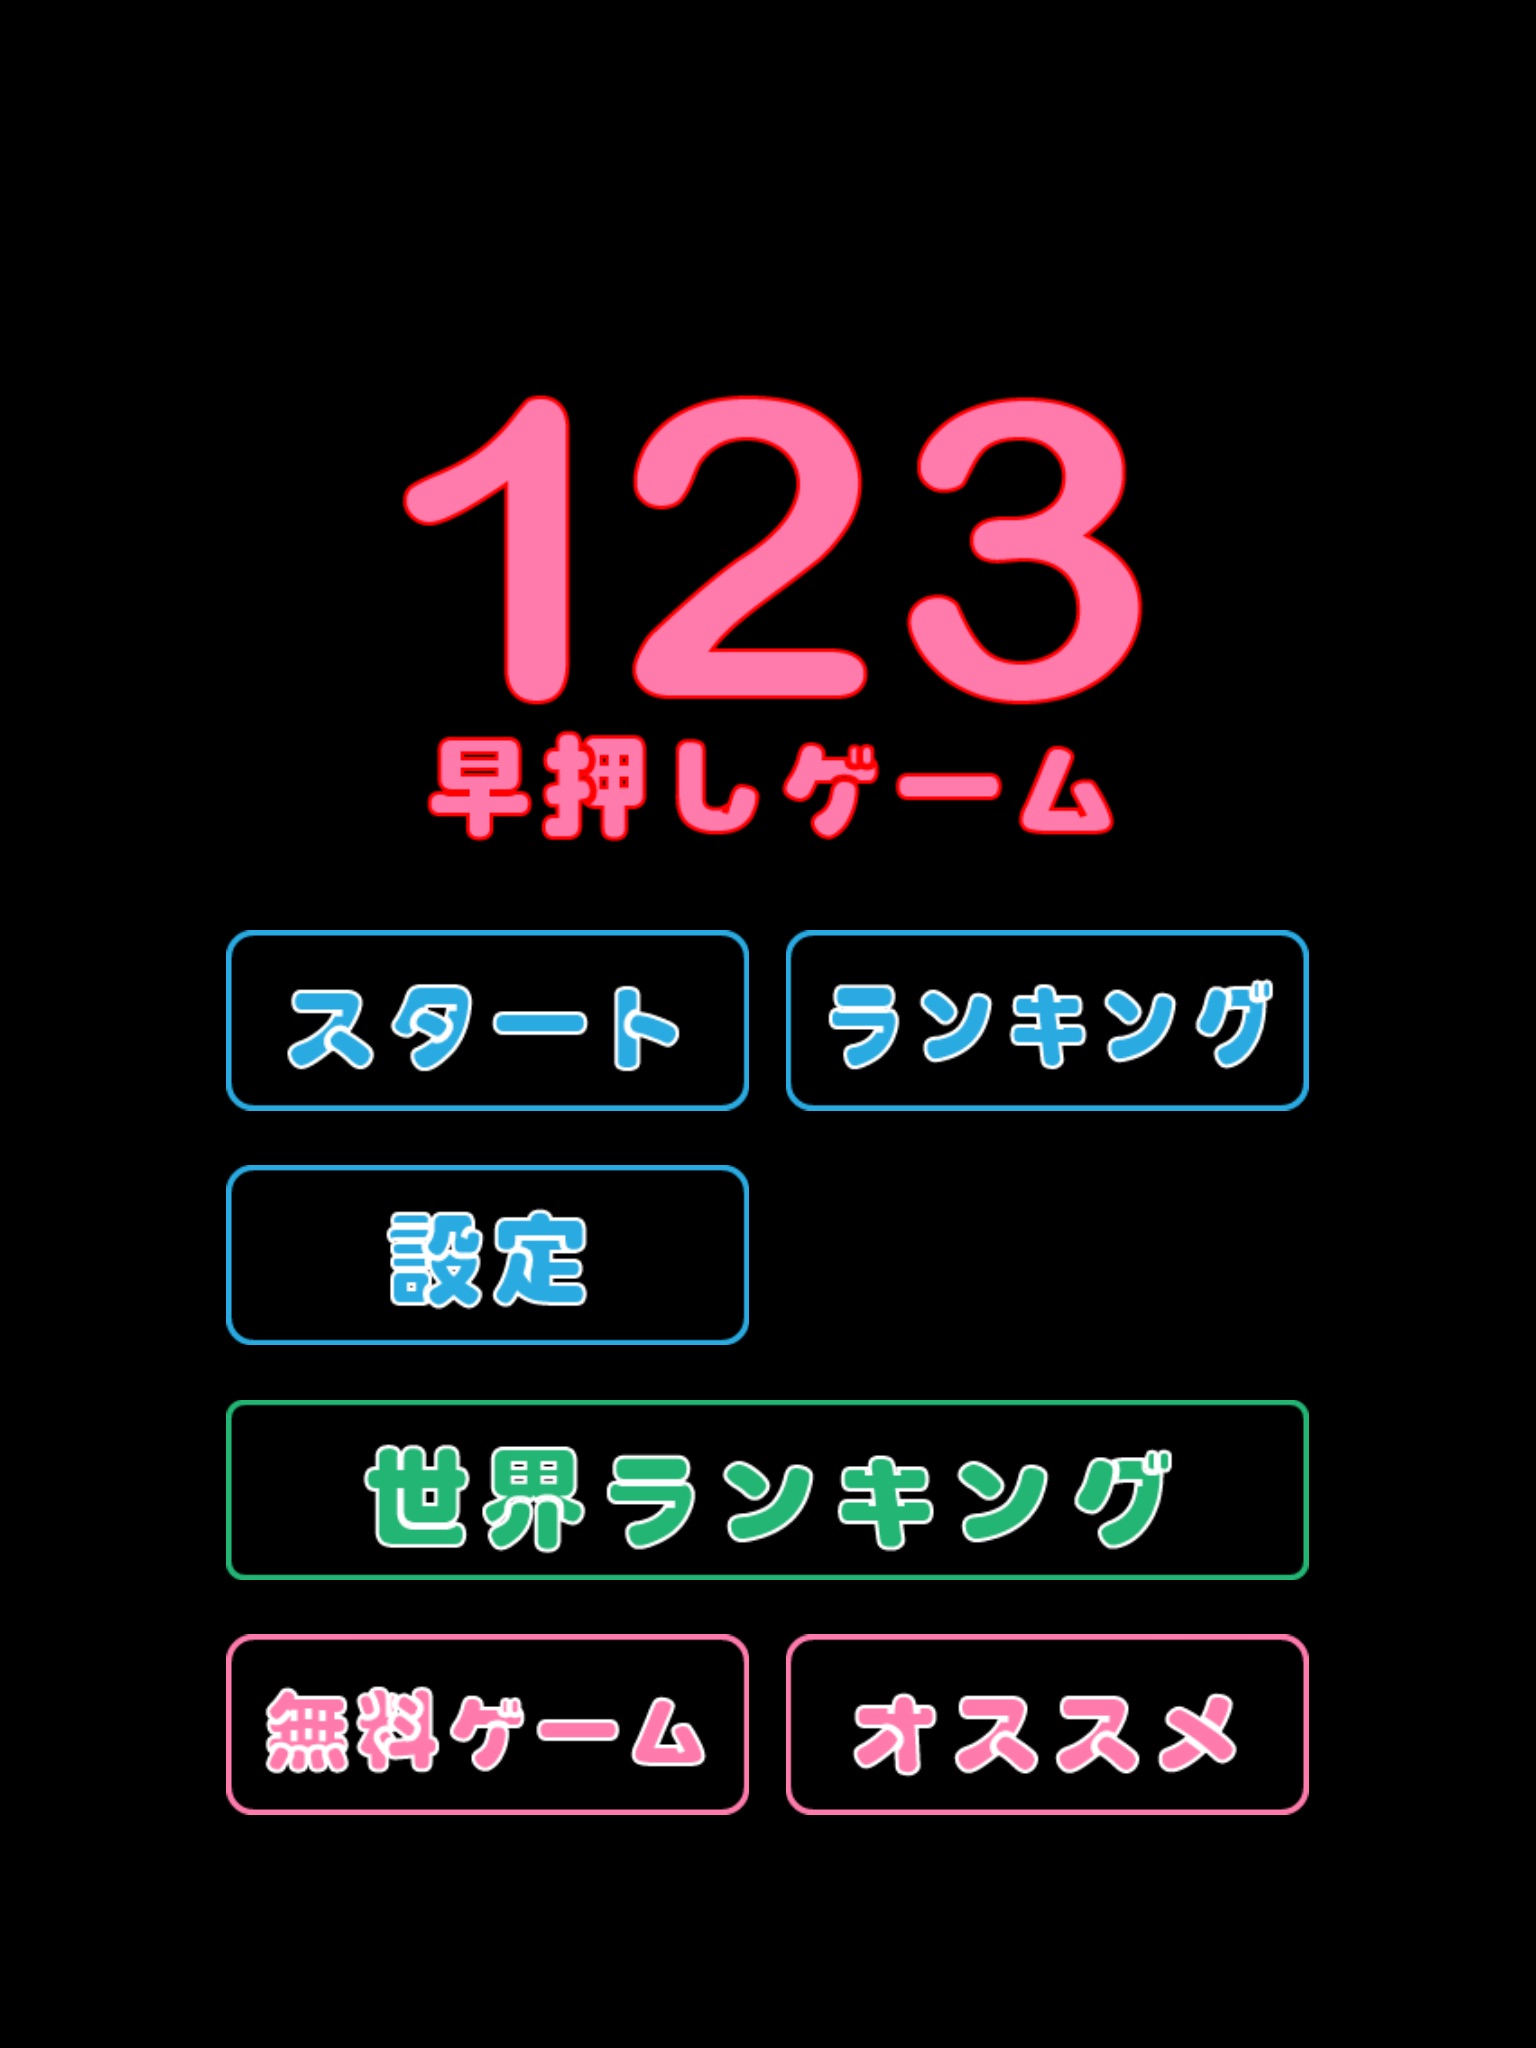 123 Numbers Tap Fast Game screenshot 3